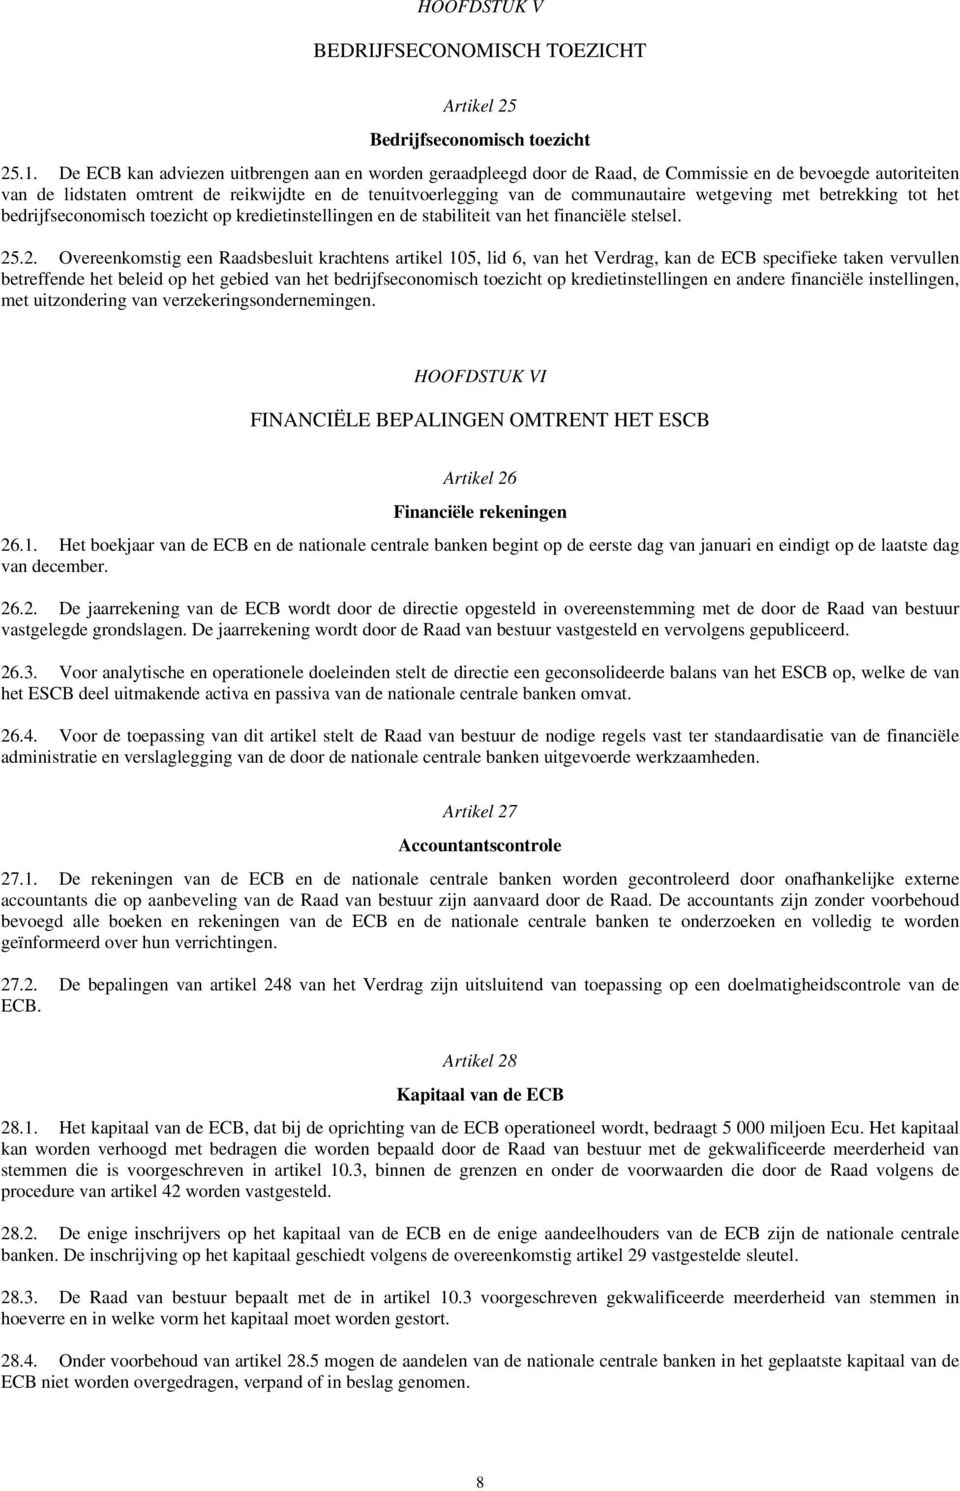 wetgeving met betrekking tot het bedrijfseconomisch toezicht op kredietinstellingen en de stabiliteit van het financiële stelsel. 25